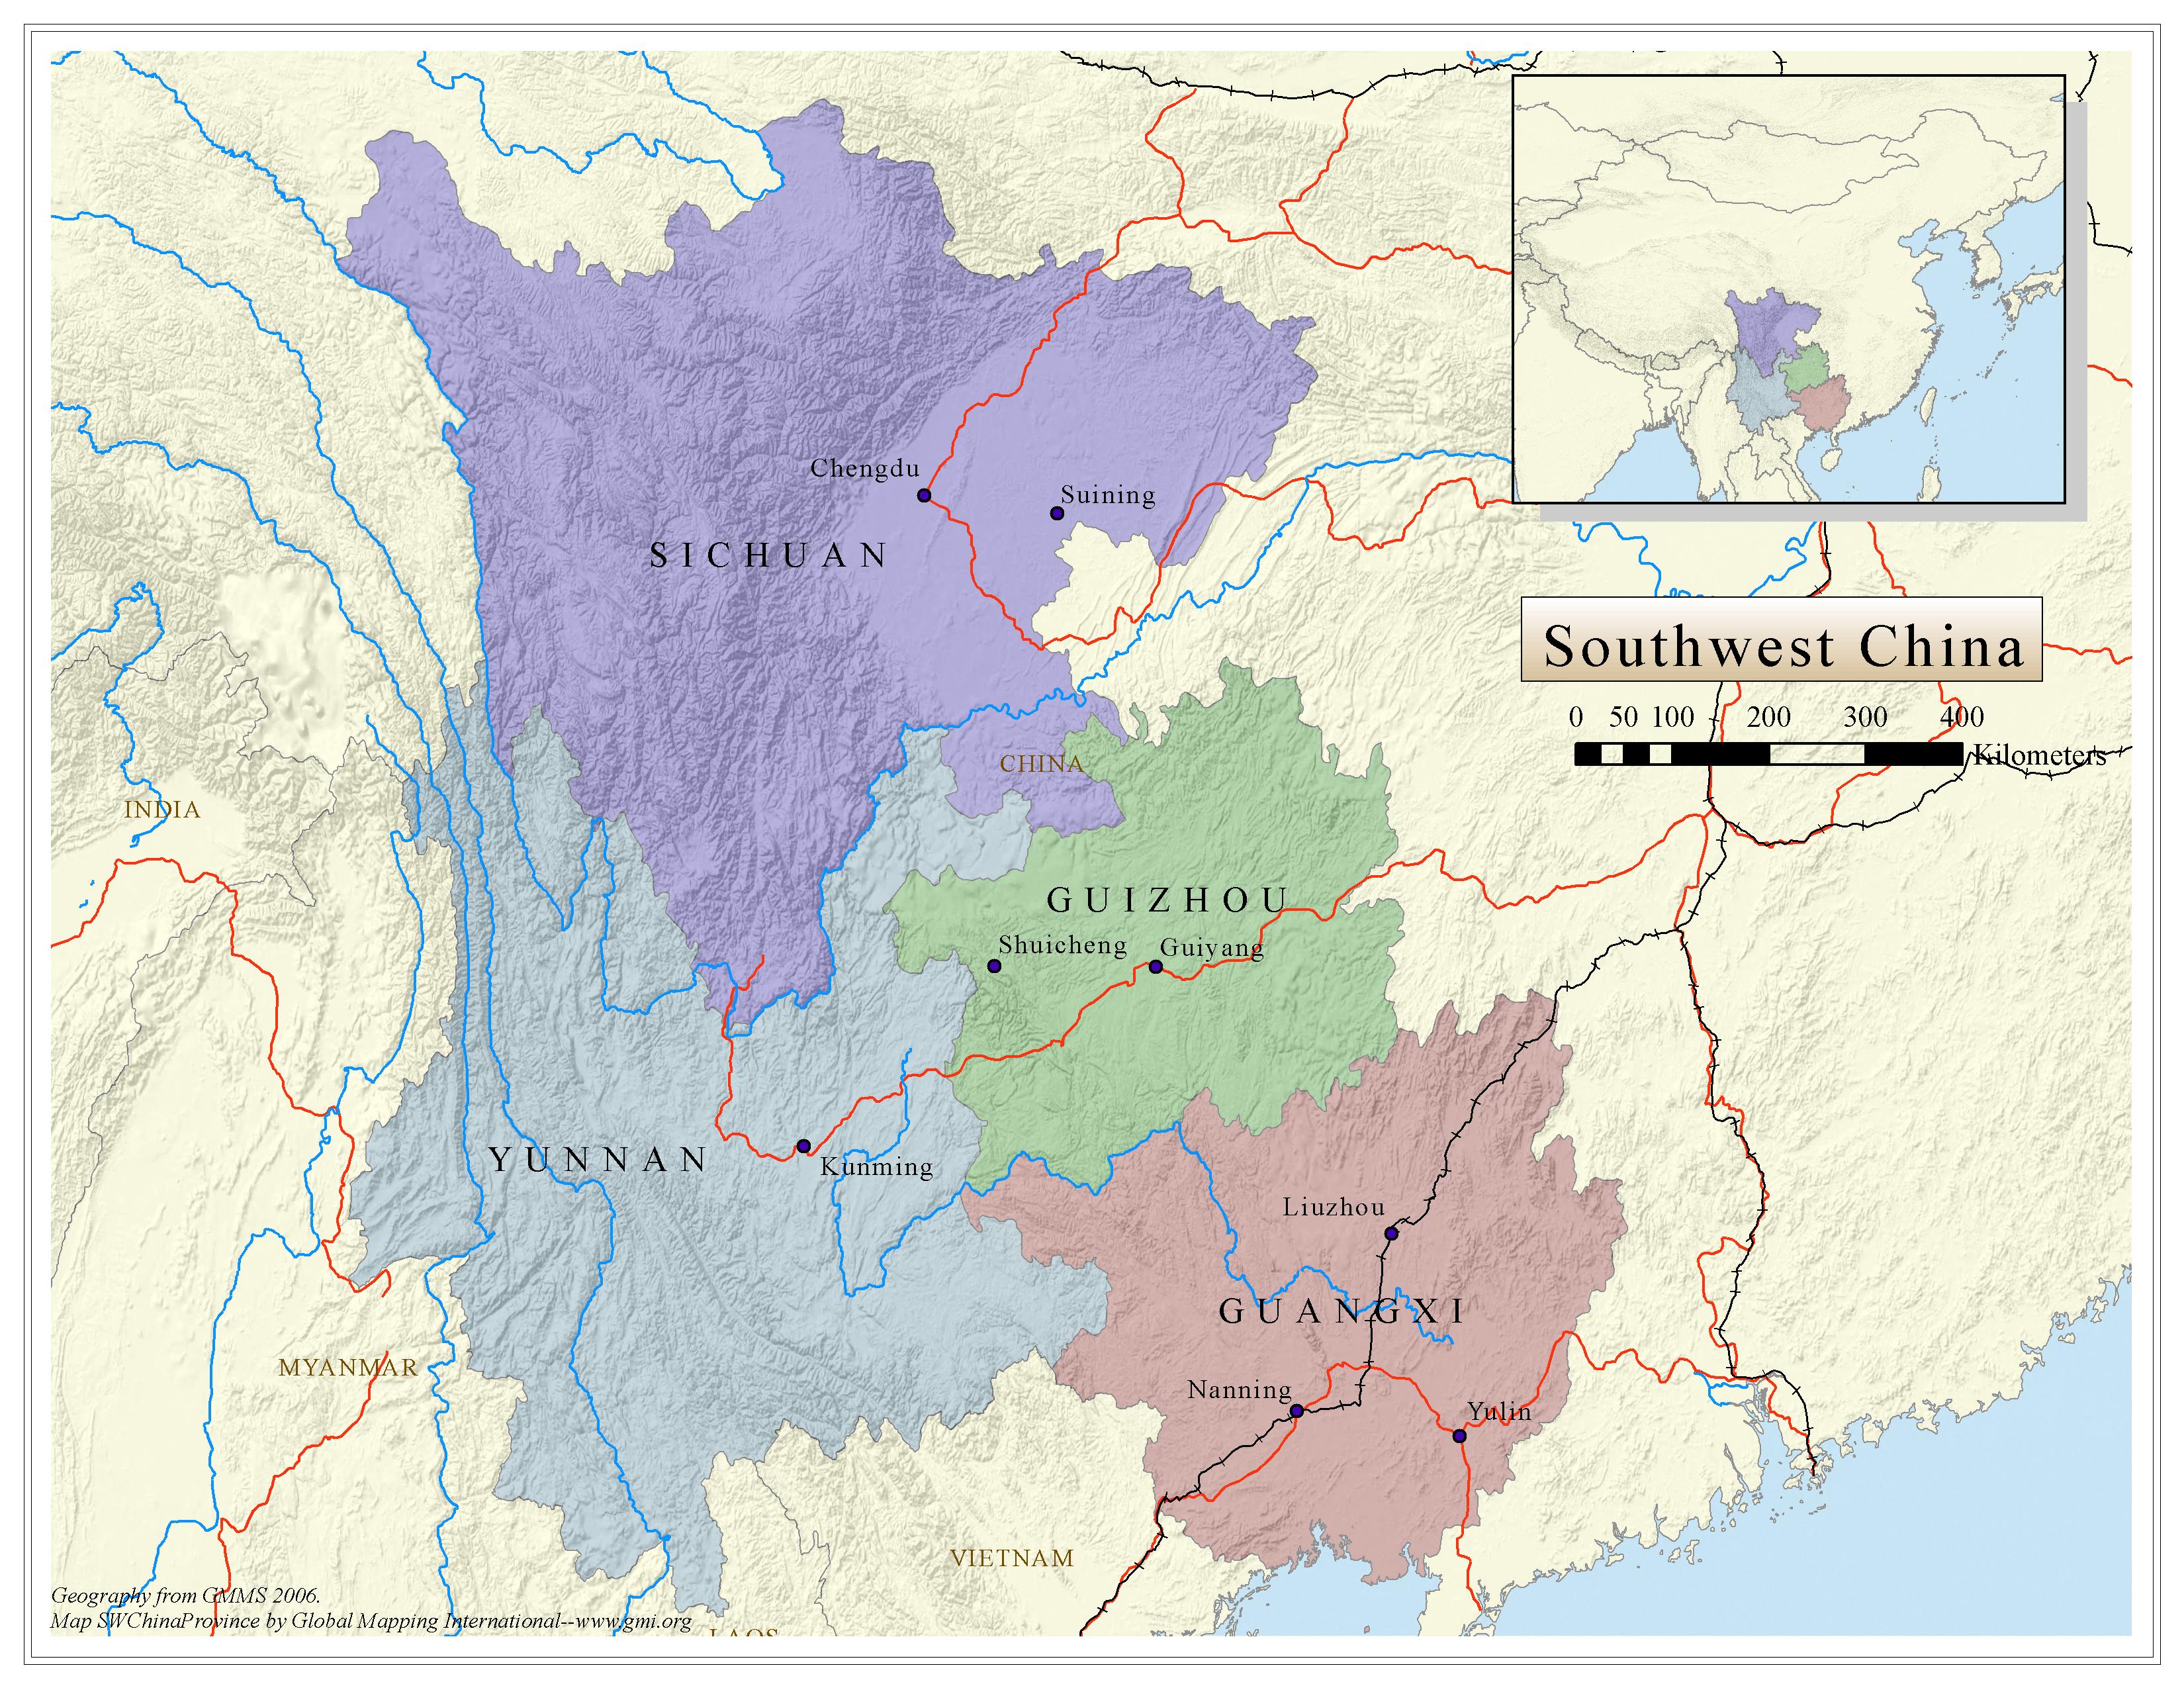 Southwest China - Political map